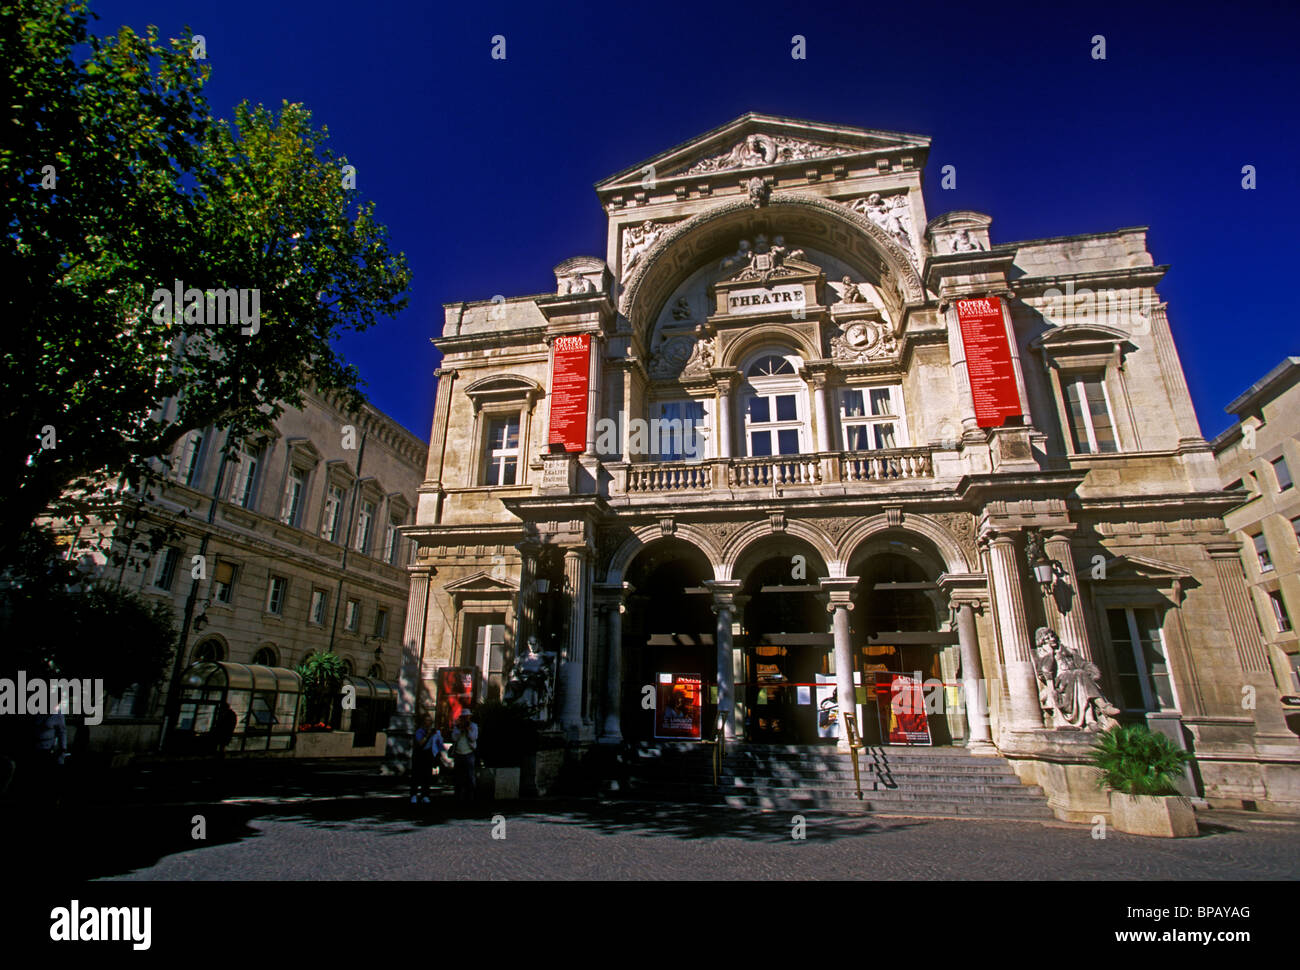 L'Opéra Théâtre, ville d'Avignon, Provence, France, Europe Banque D'Images